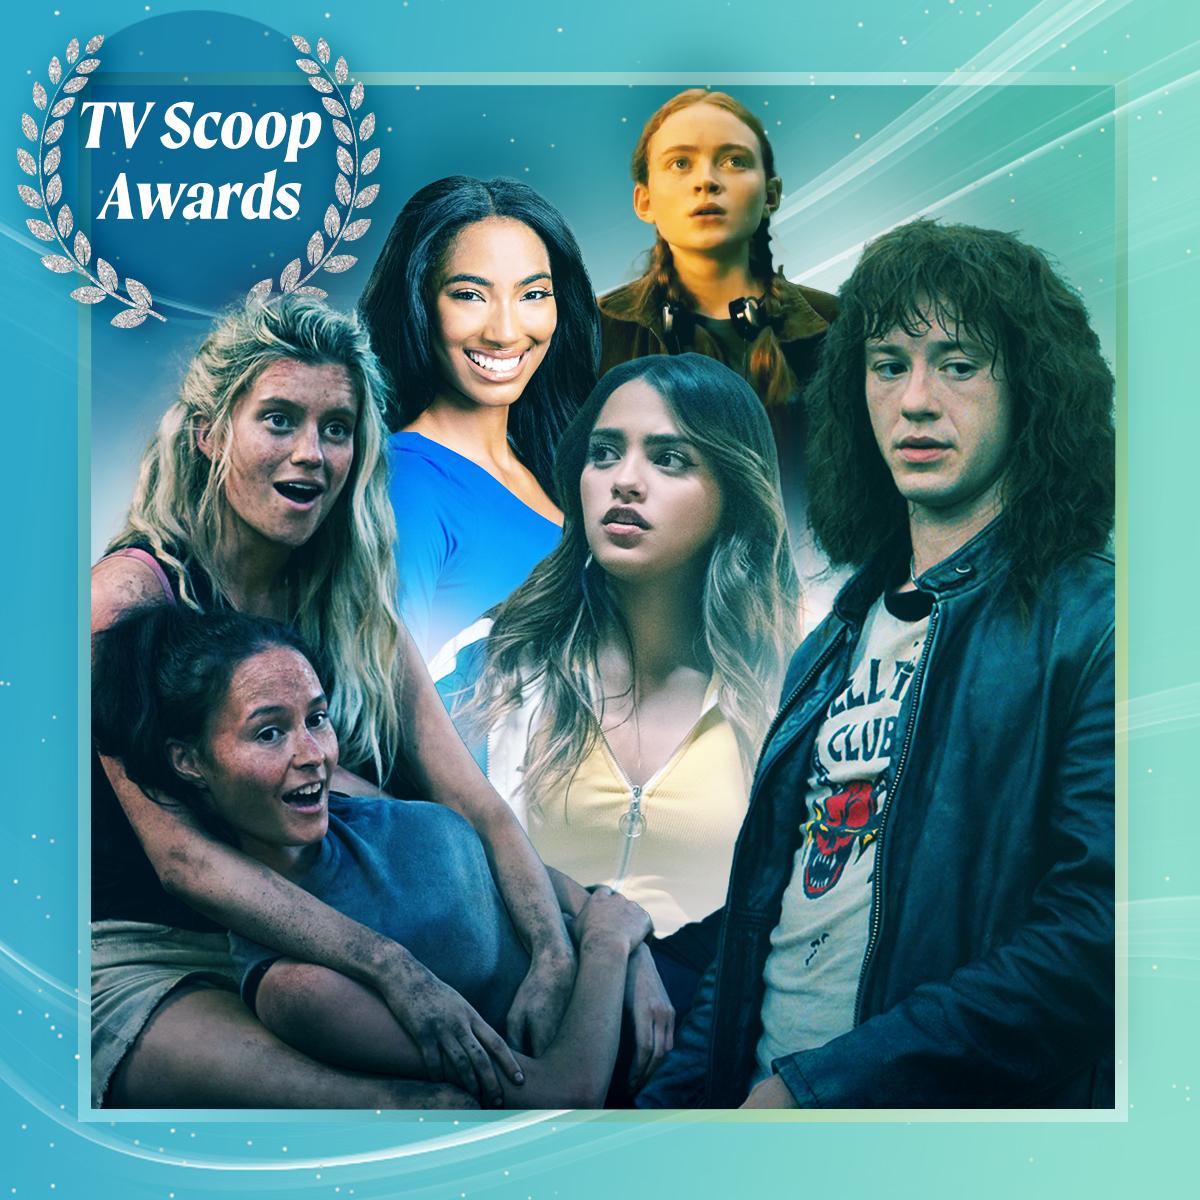 TV Scoop Awards 2022: The Full List of Winners